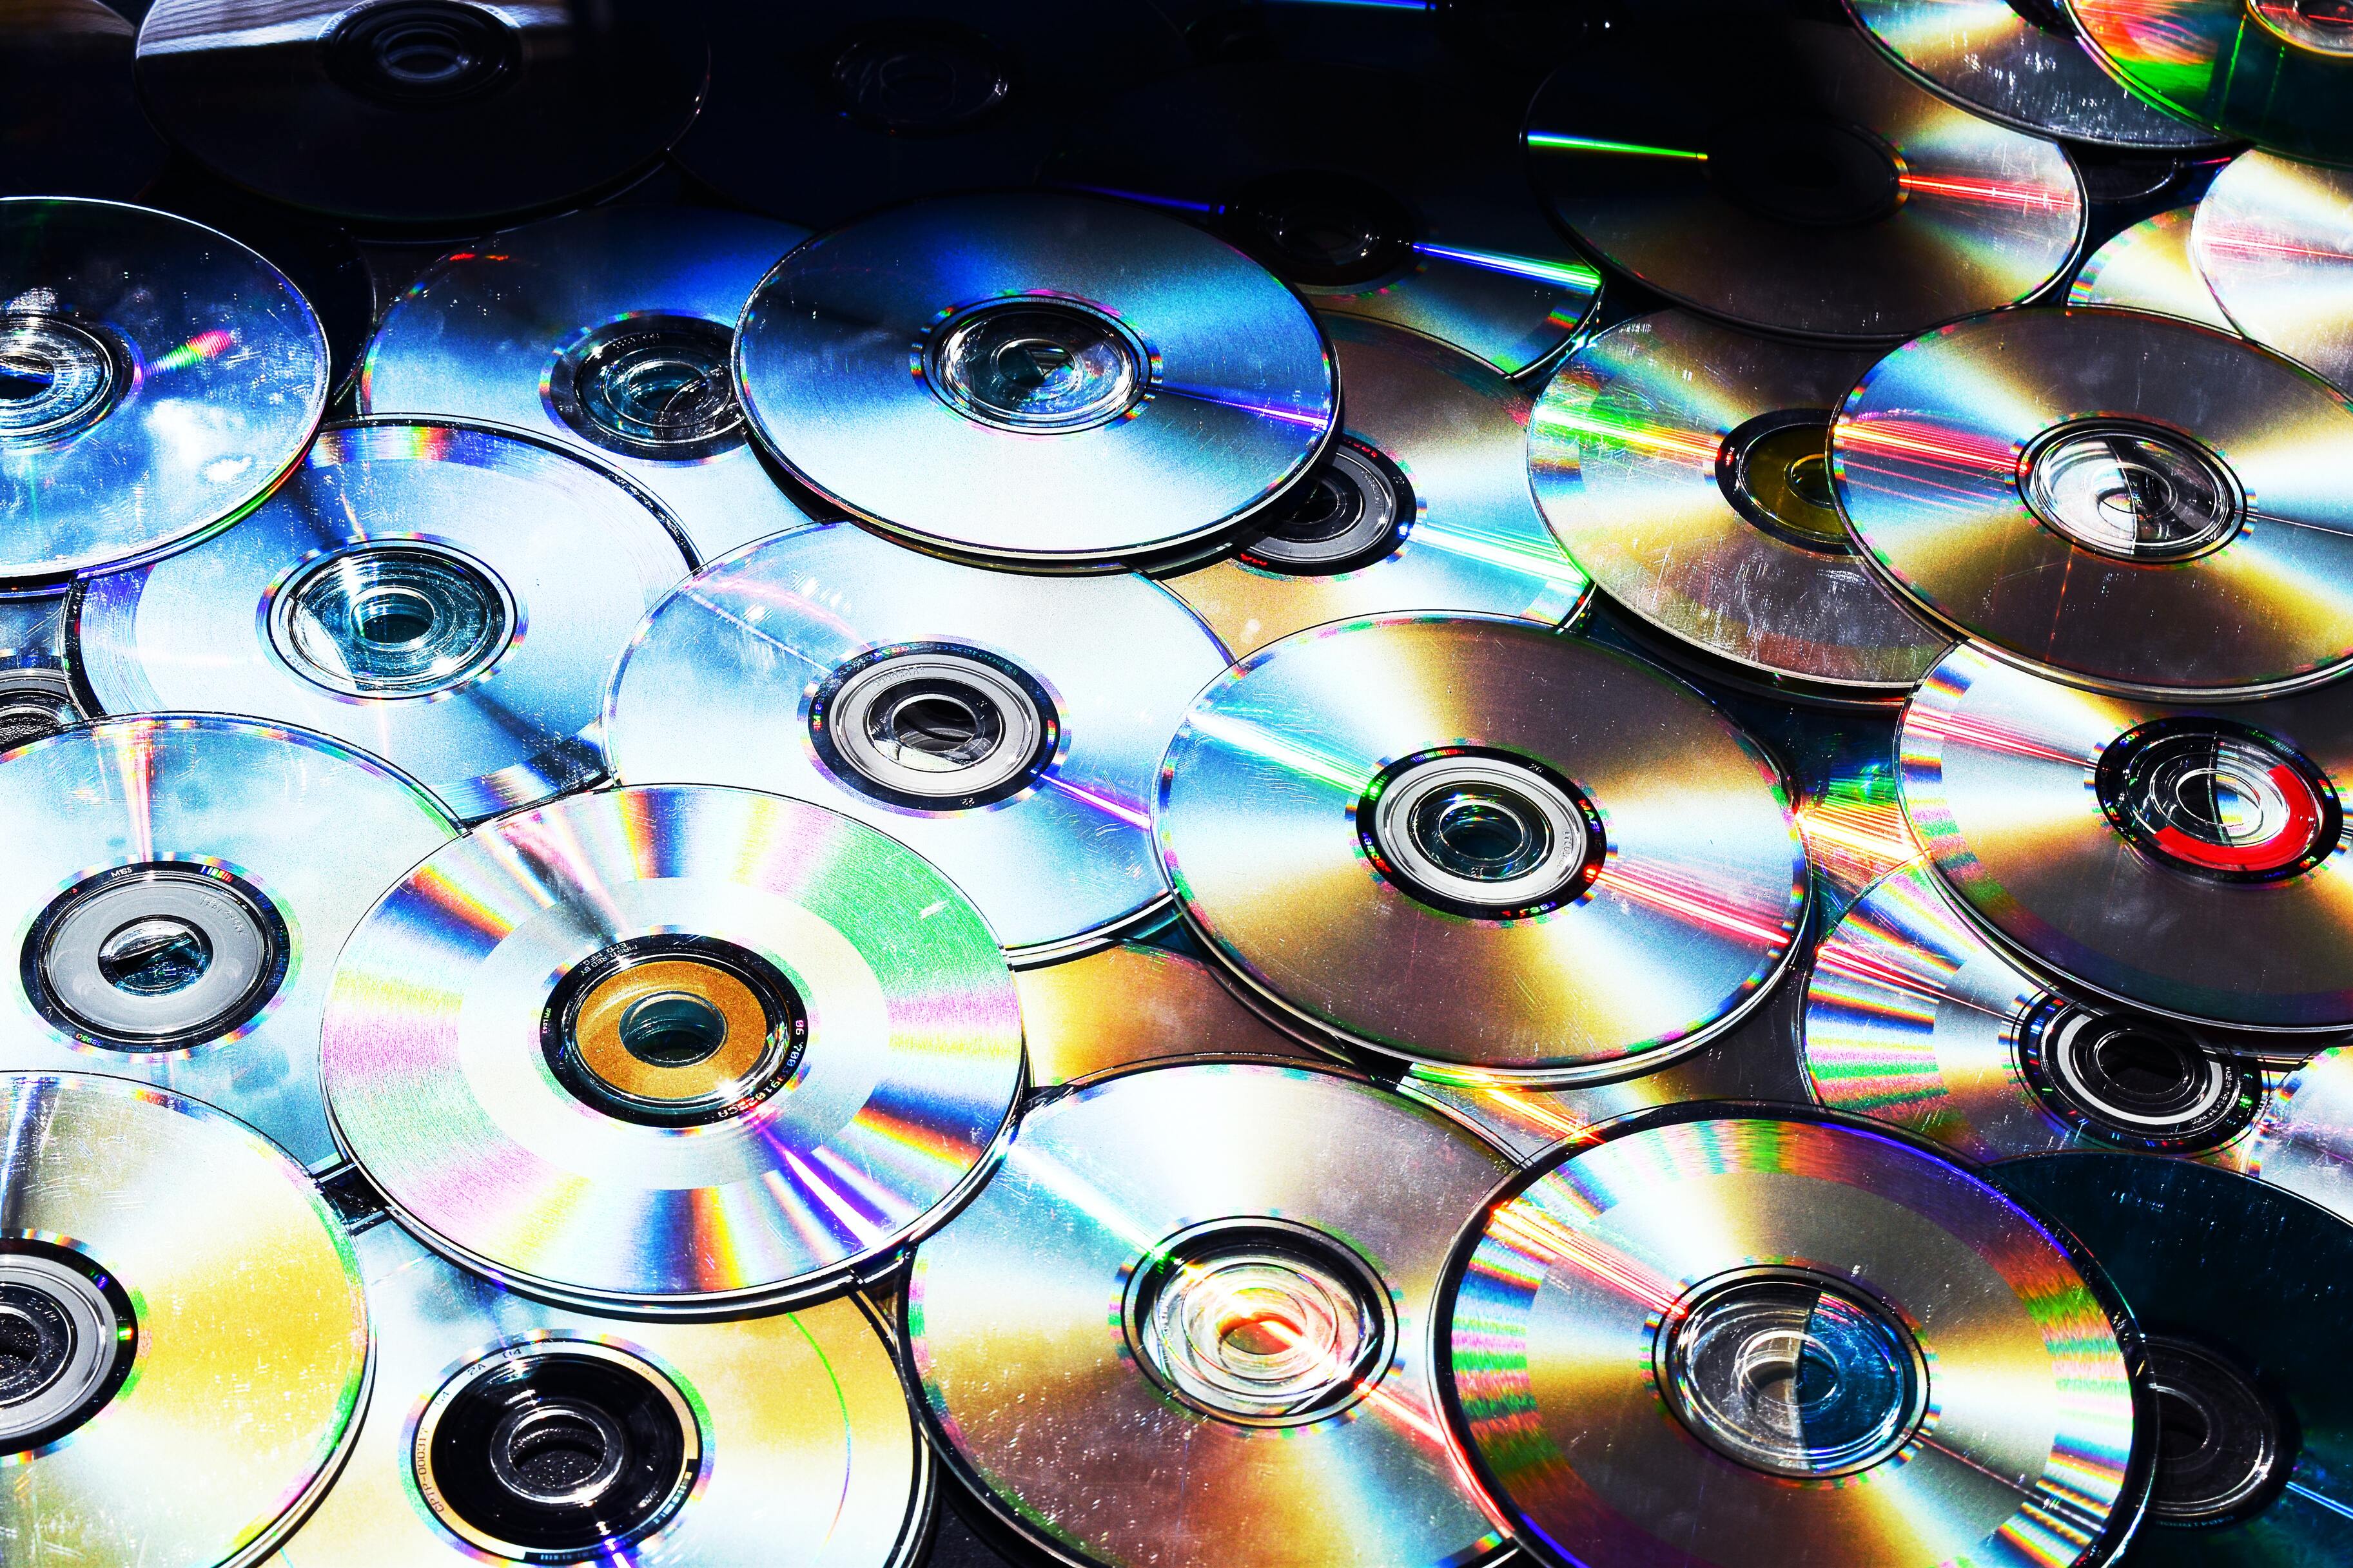 Россияне снова начали скупать DVD-диски. Да, дело в санкциях